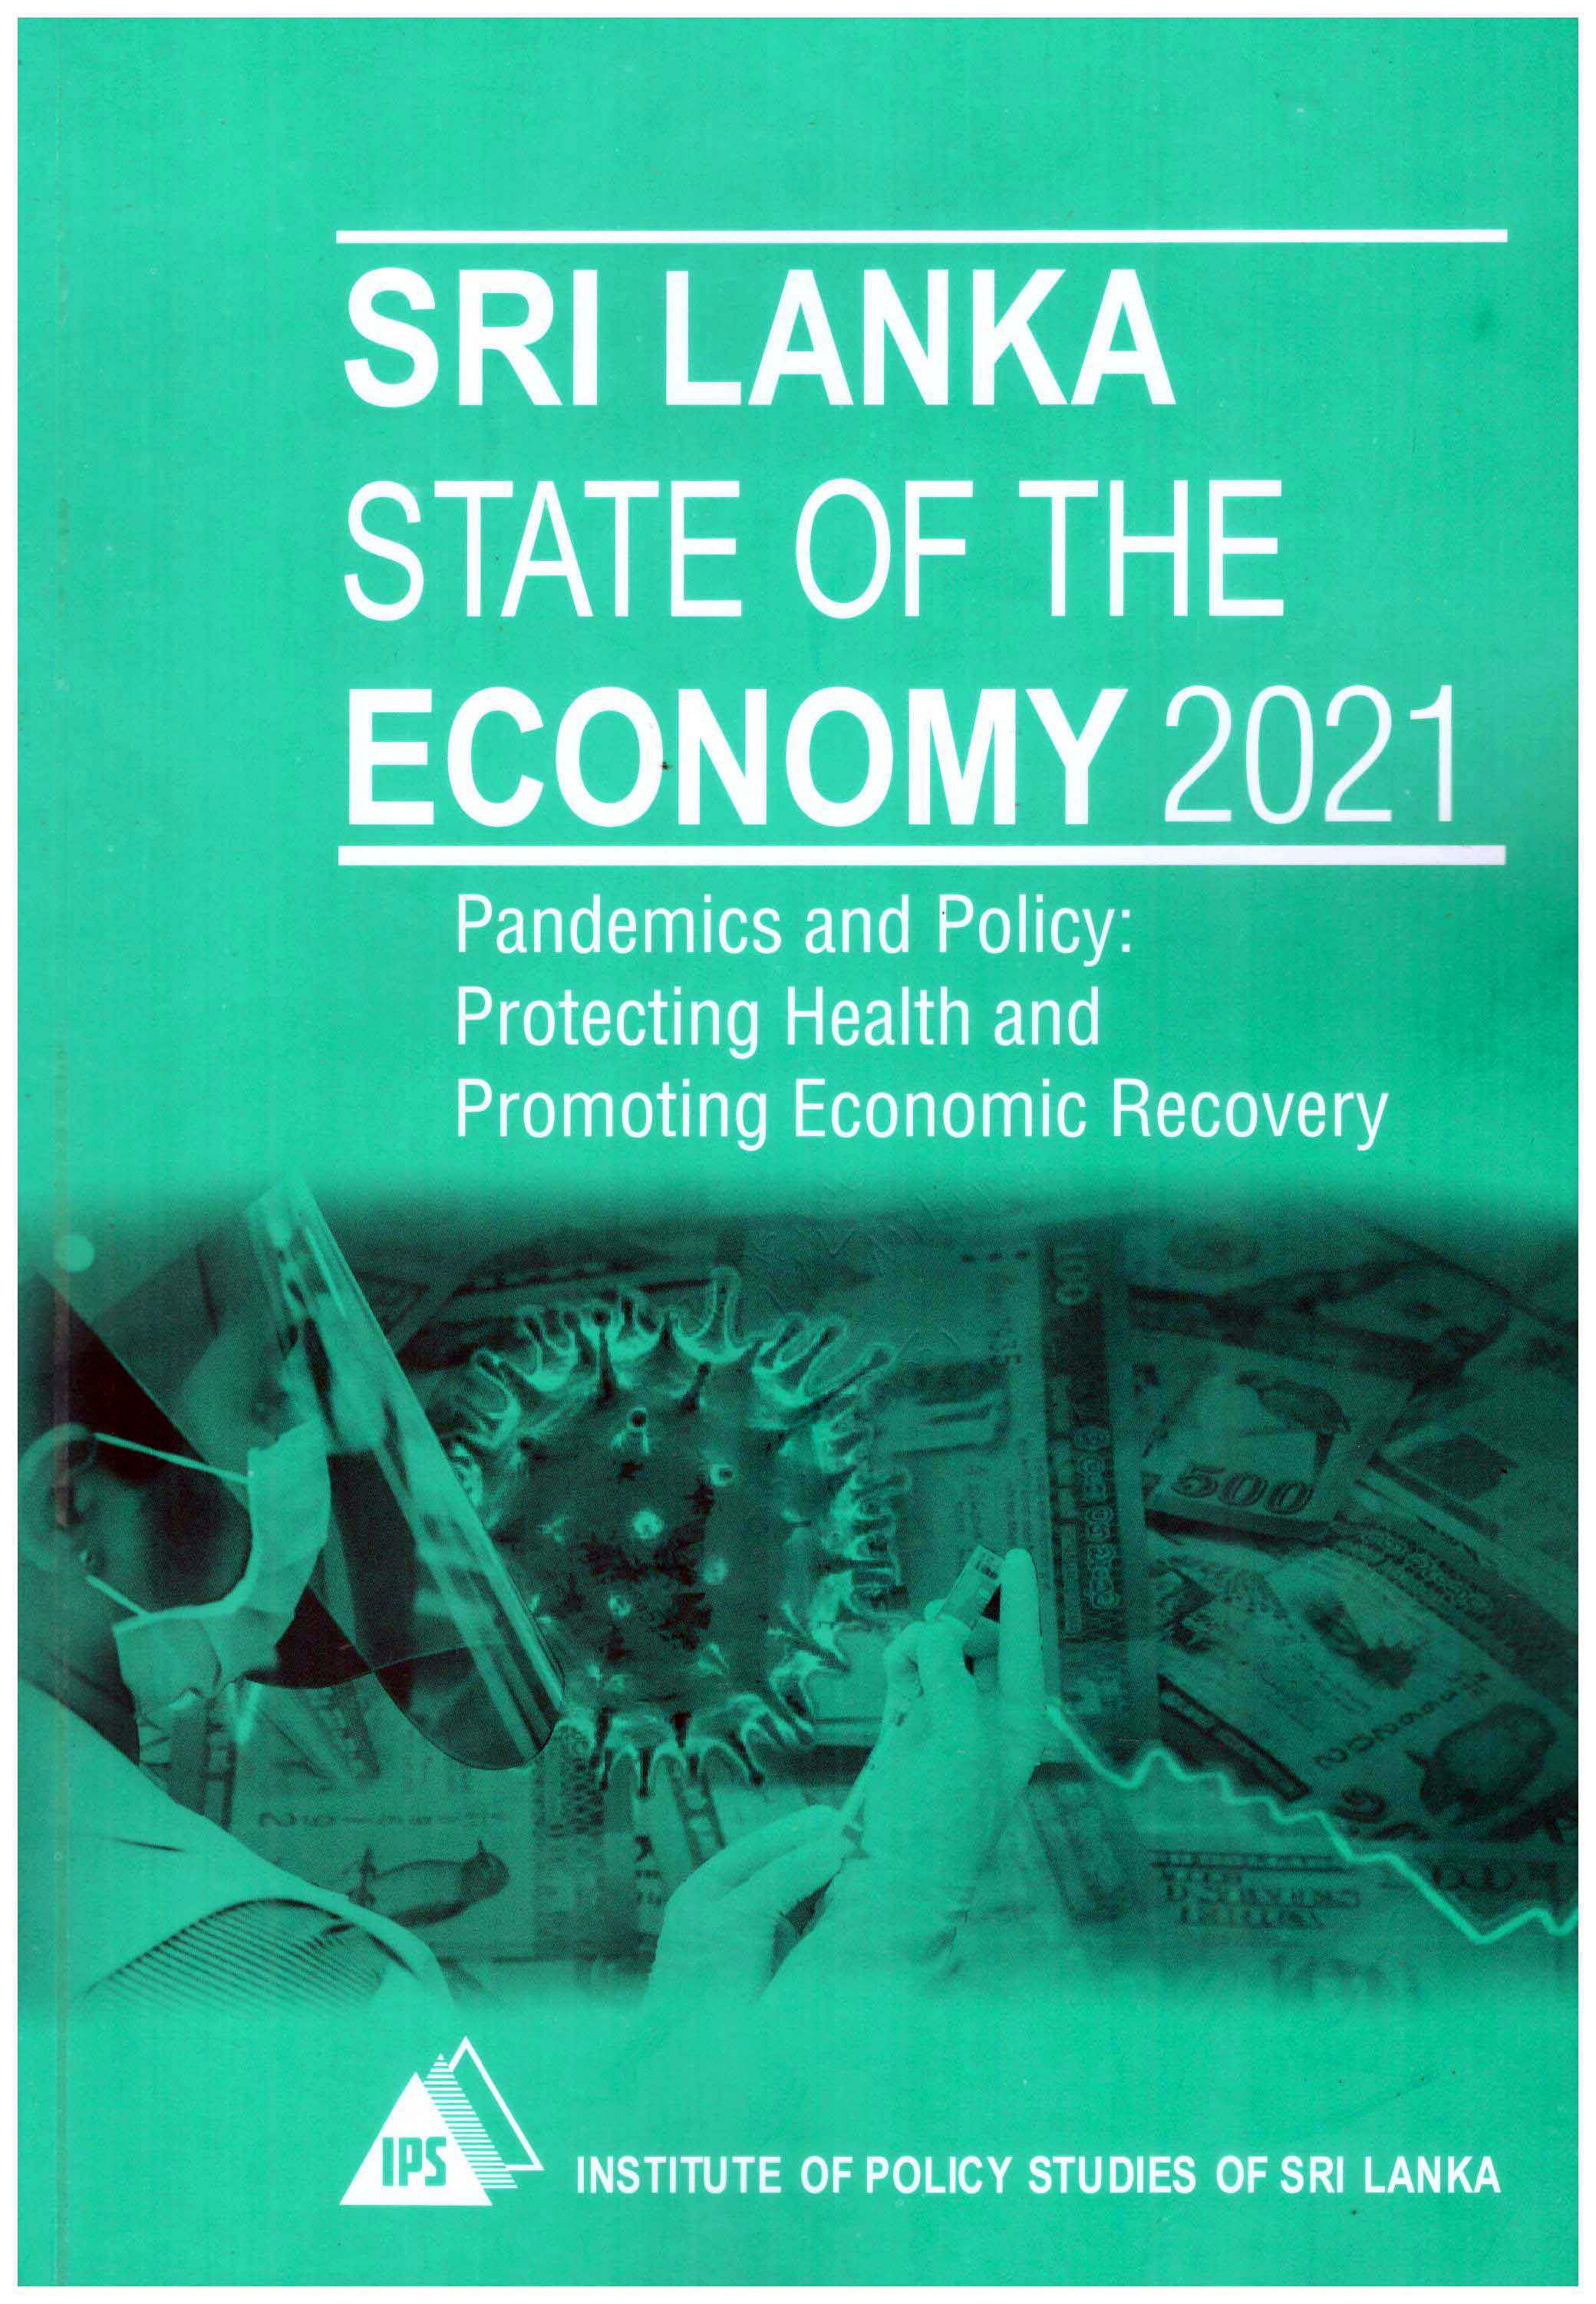 Sri Lanka State of the Economy 2021